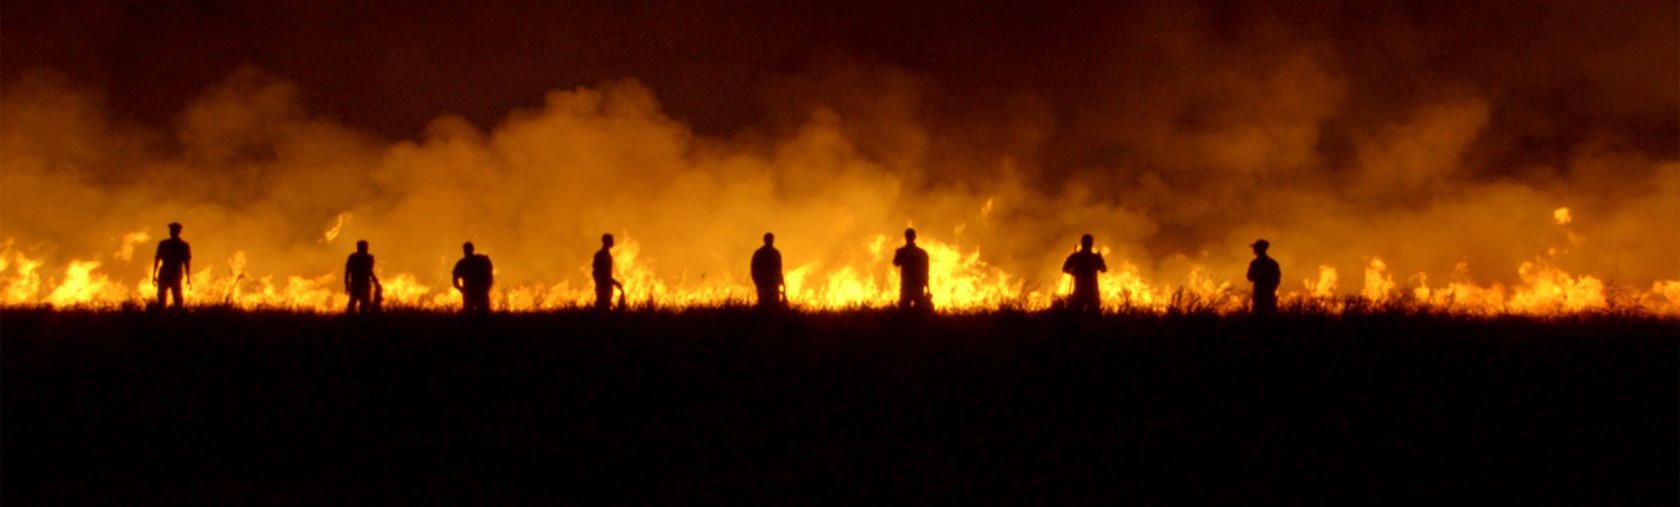 Silhouettes of people walking near field on fire, from Rojek